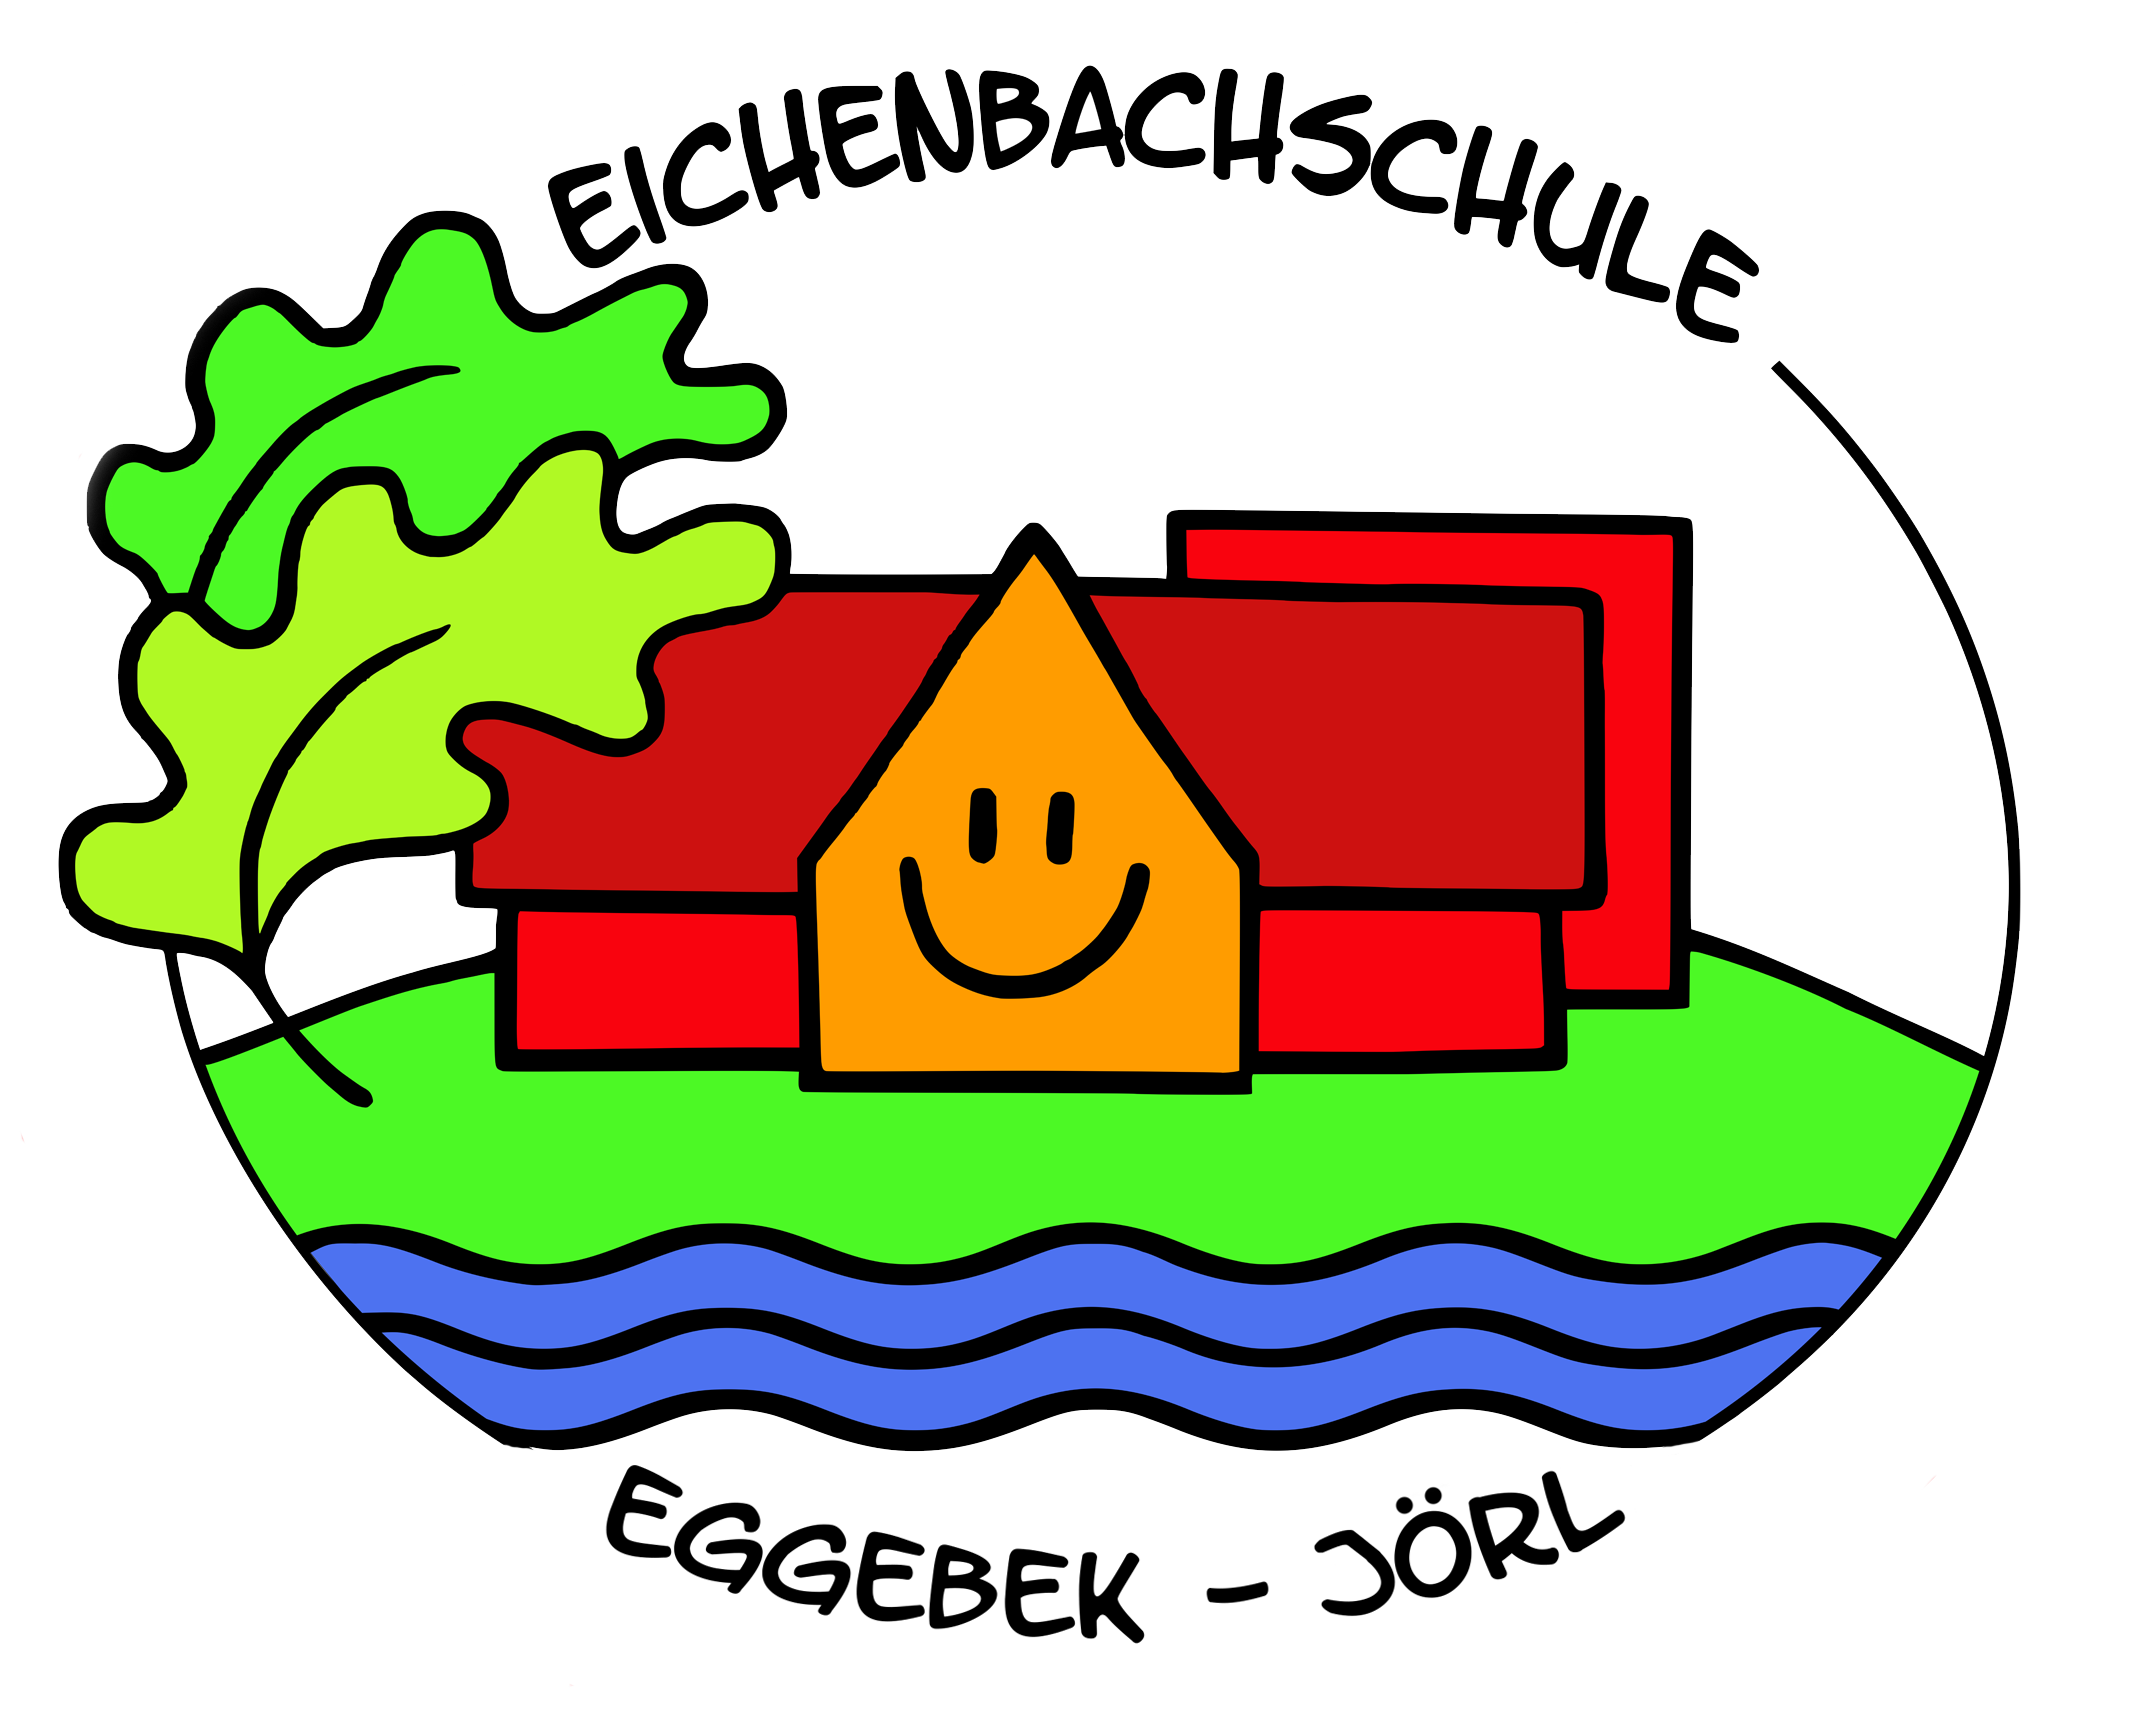 Eichenbachschule Eggebek